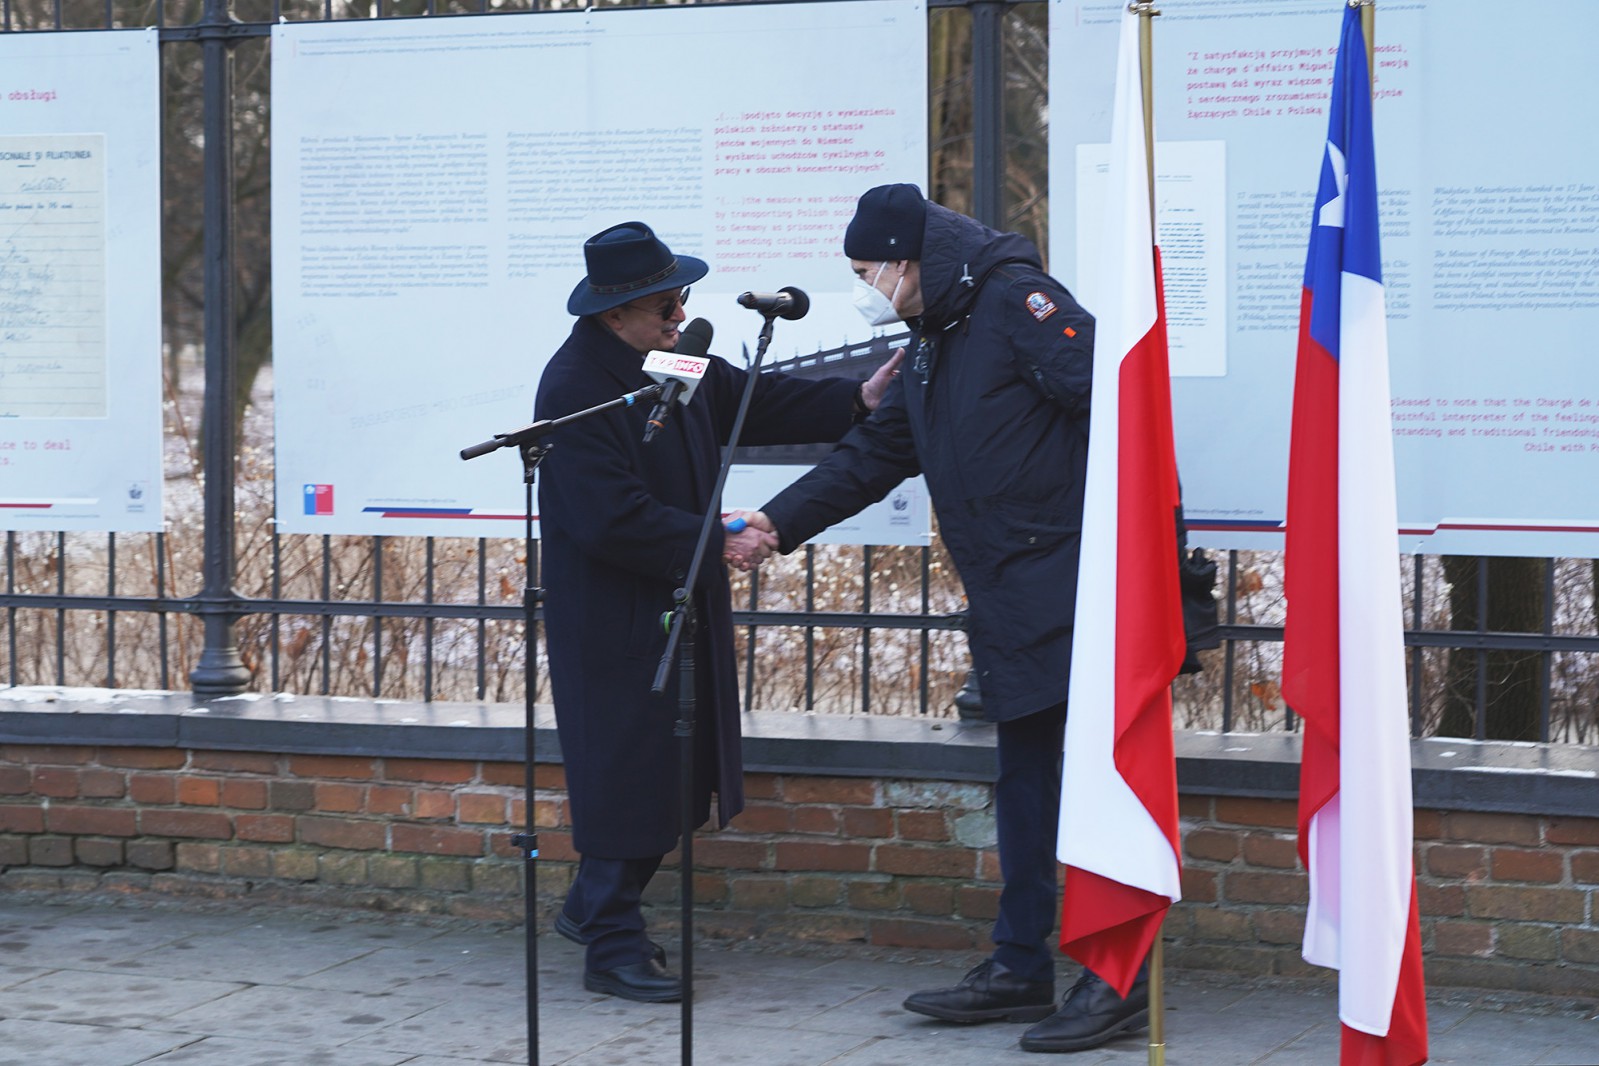 Dwaj mężczyźni w zimowych okryciach podają sobie ręce. Mężczyźni stoją na tle plansz wystawowych, wiszących na ogrodzeniu. Po prawej stronie stoją dwie flagi. 